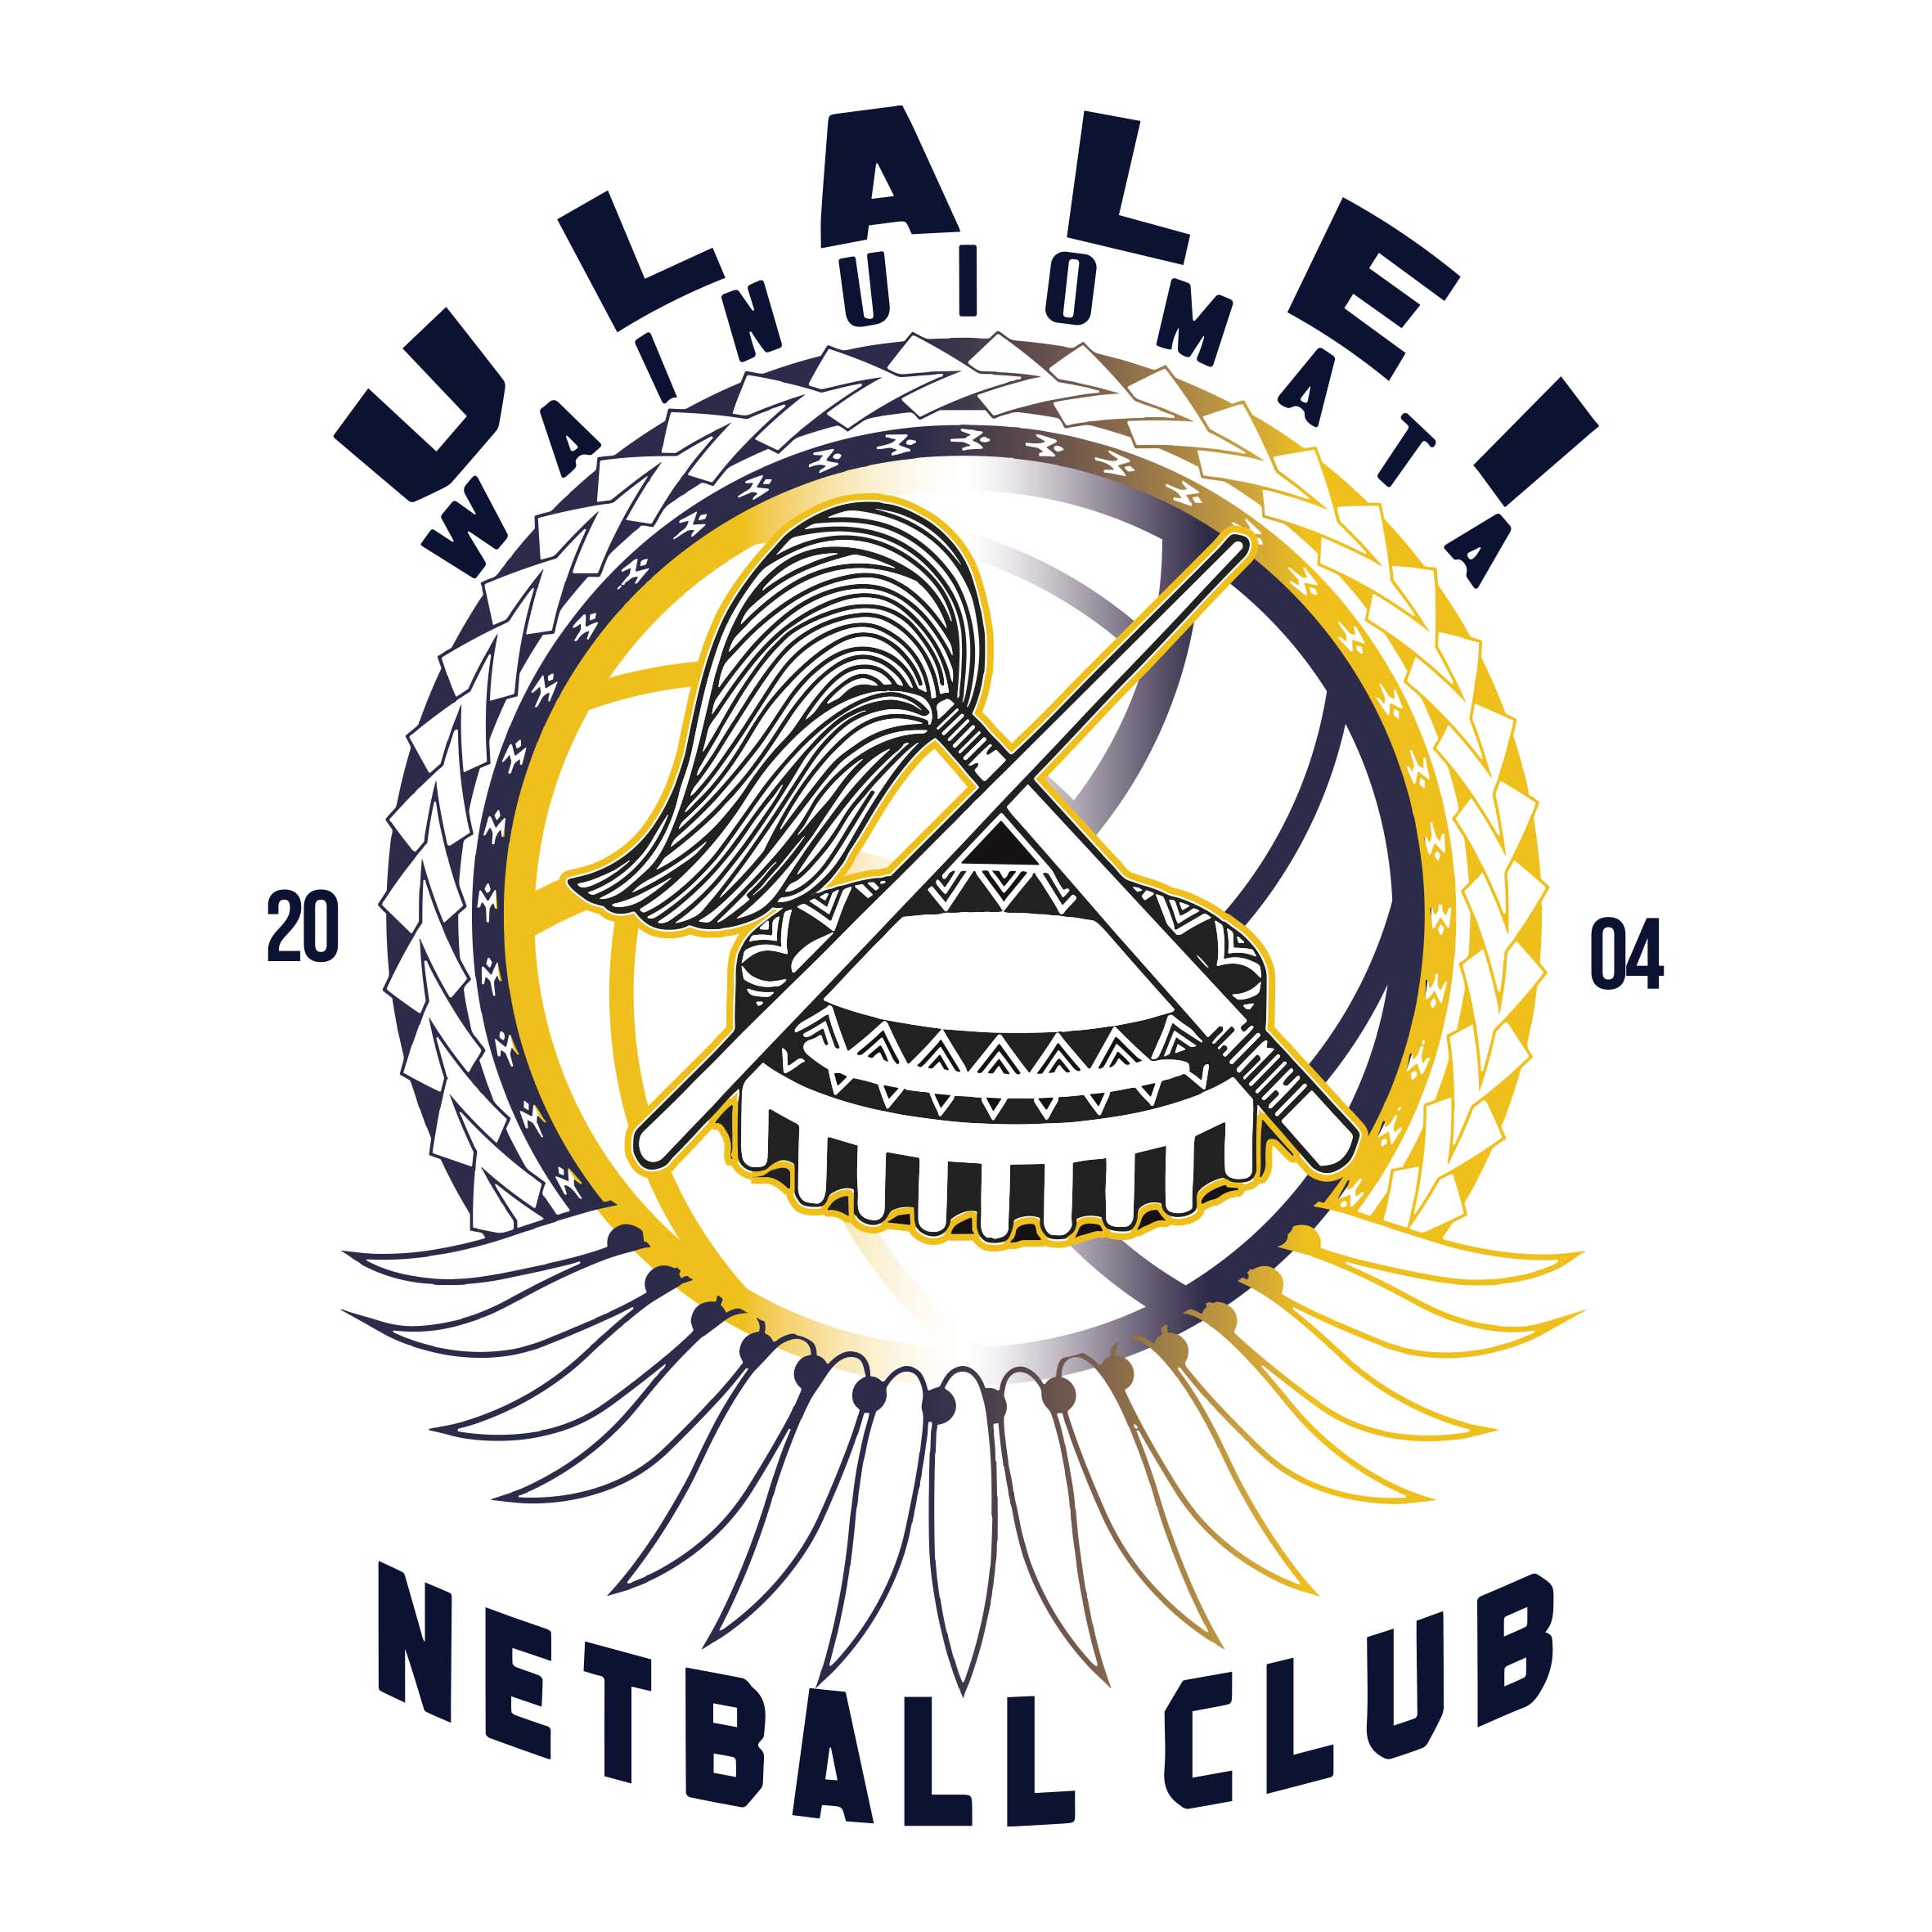 Ulalei Netball